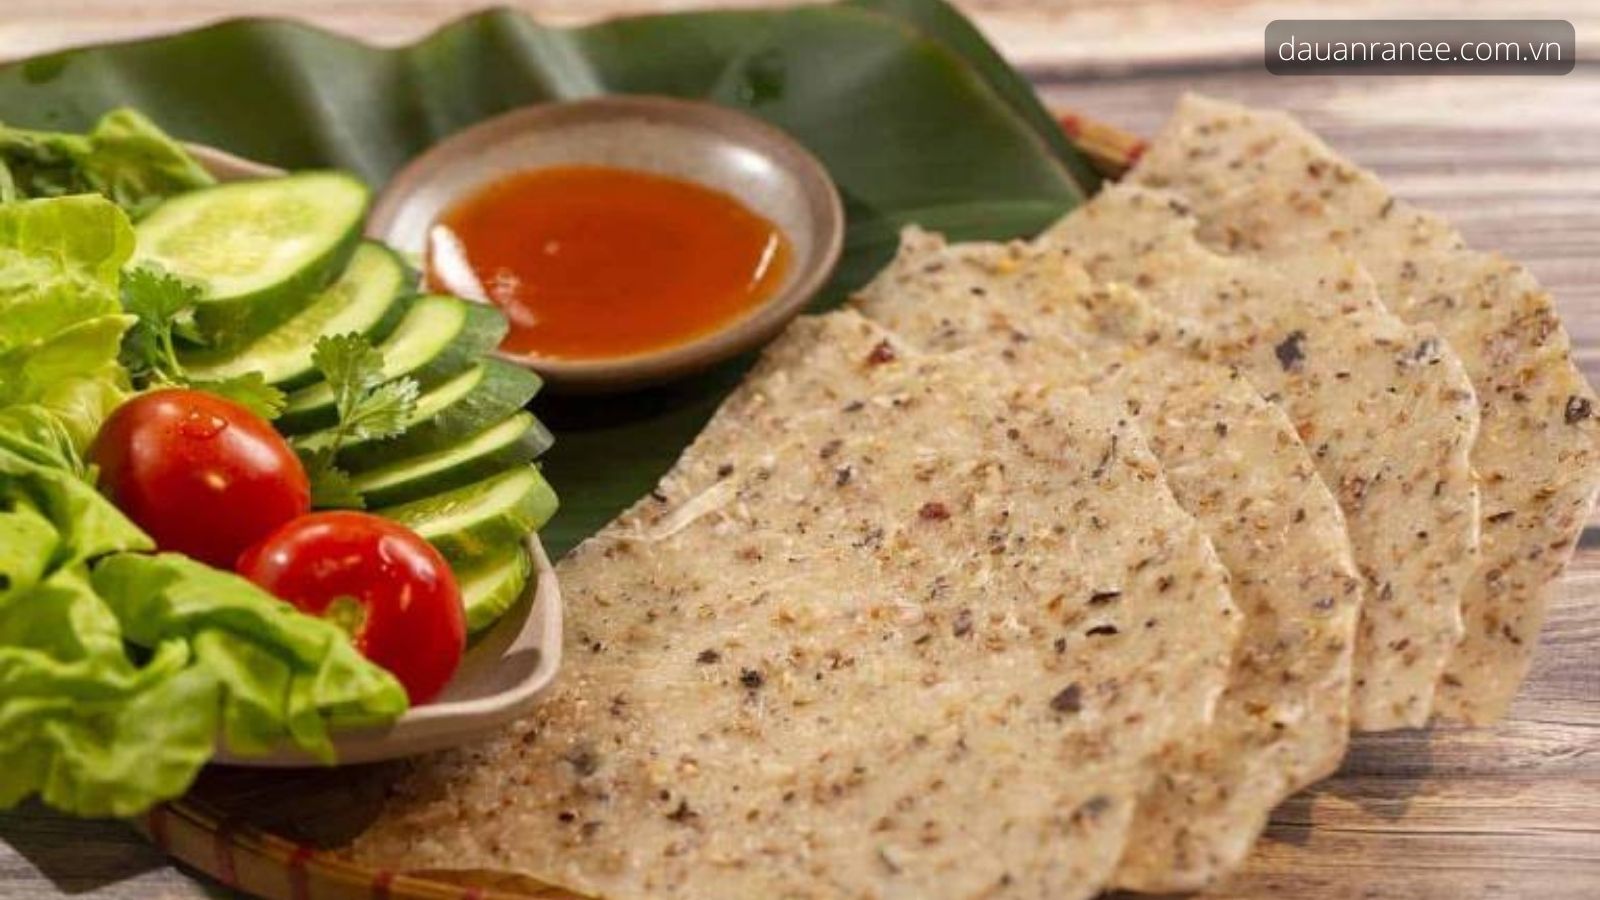 Bánh tráng nước dừa - Đặc sản Bình Định ngon nổi tiếng